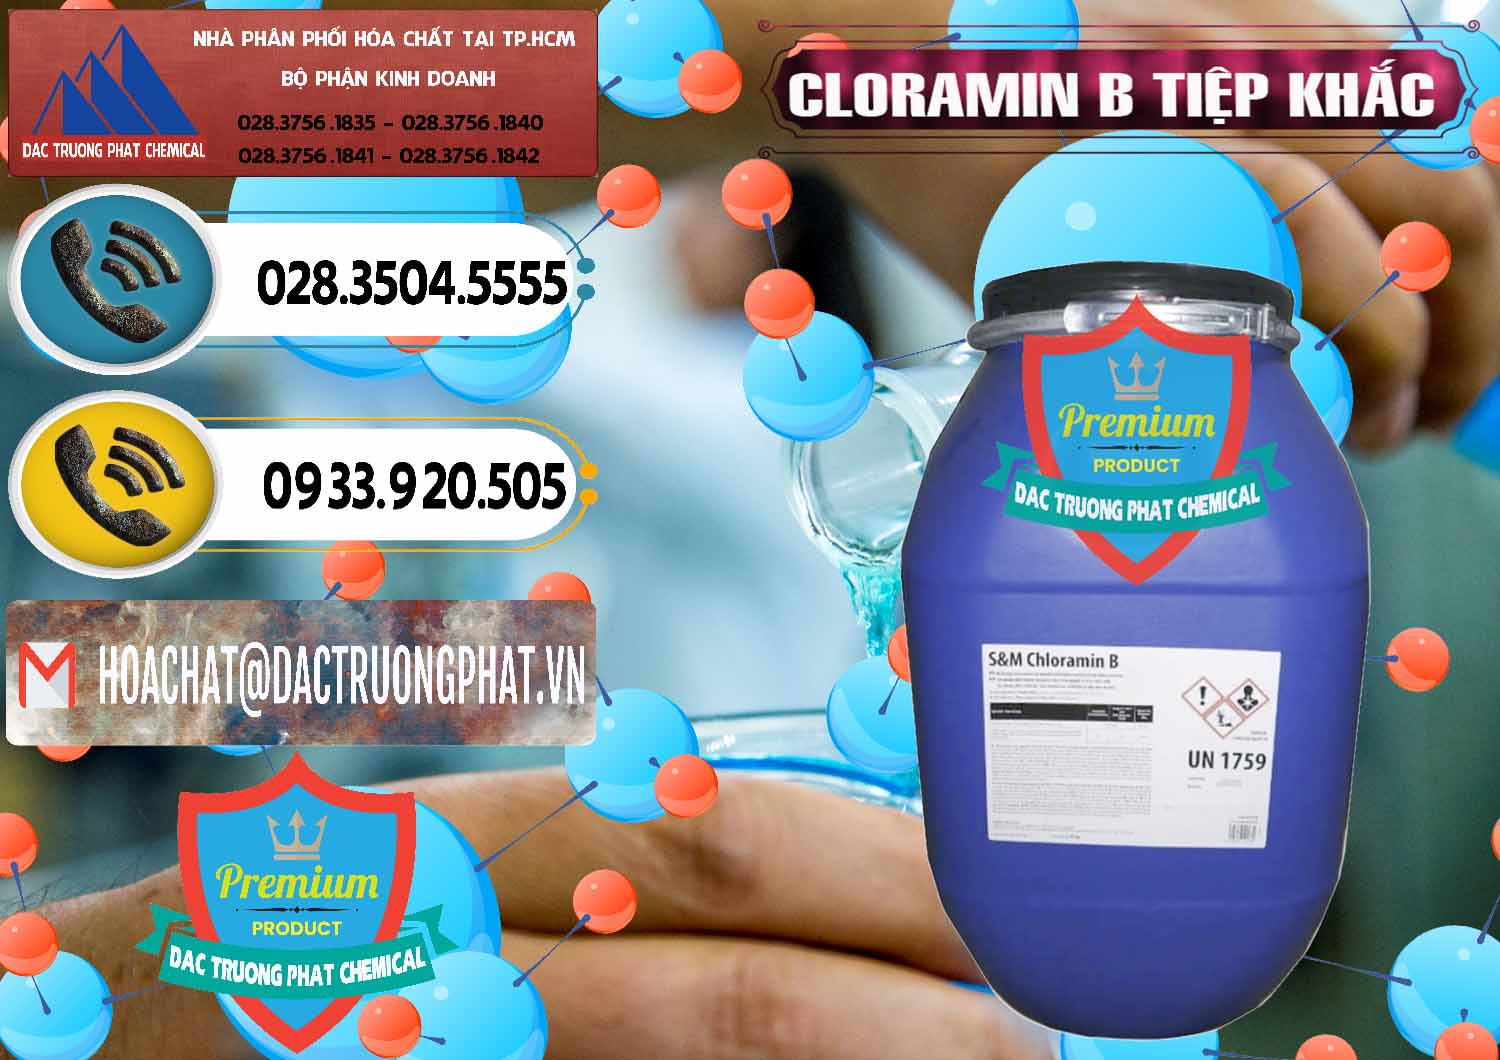 Đơn vị chuyên bán & phân phối Cloramin B Cộng Hòa Séc Tiệp Khắc Czech Republic - 0299 - Đơn vị chuyên cung cấp và nhập khẩu hóa chất tại TP.HCM - hoachatdetnhuom.vn